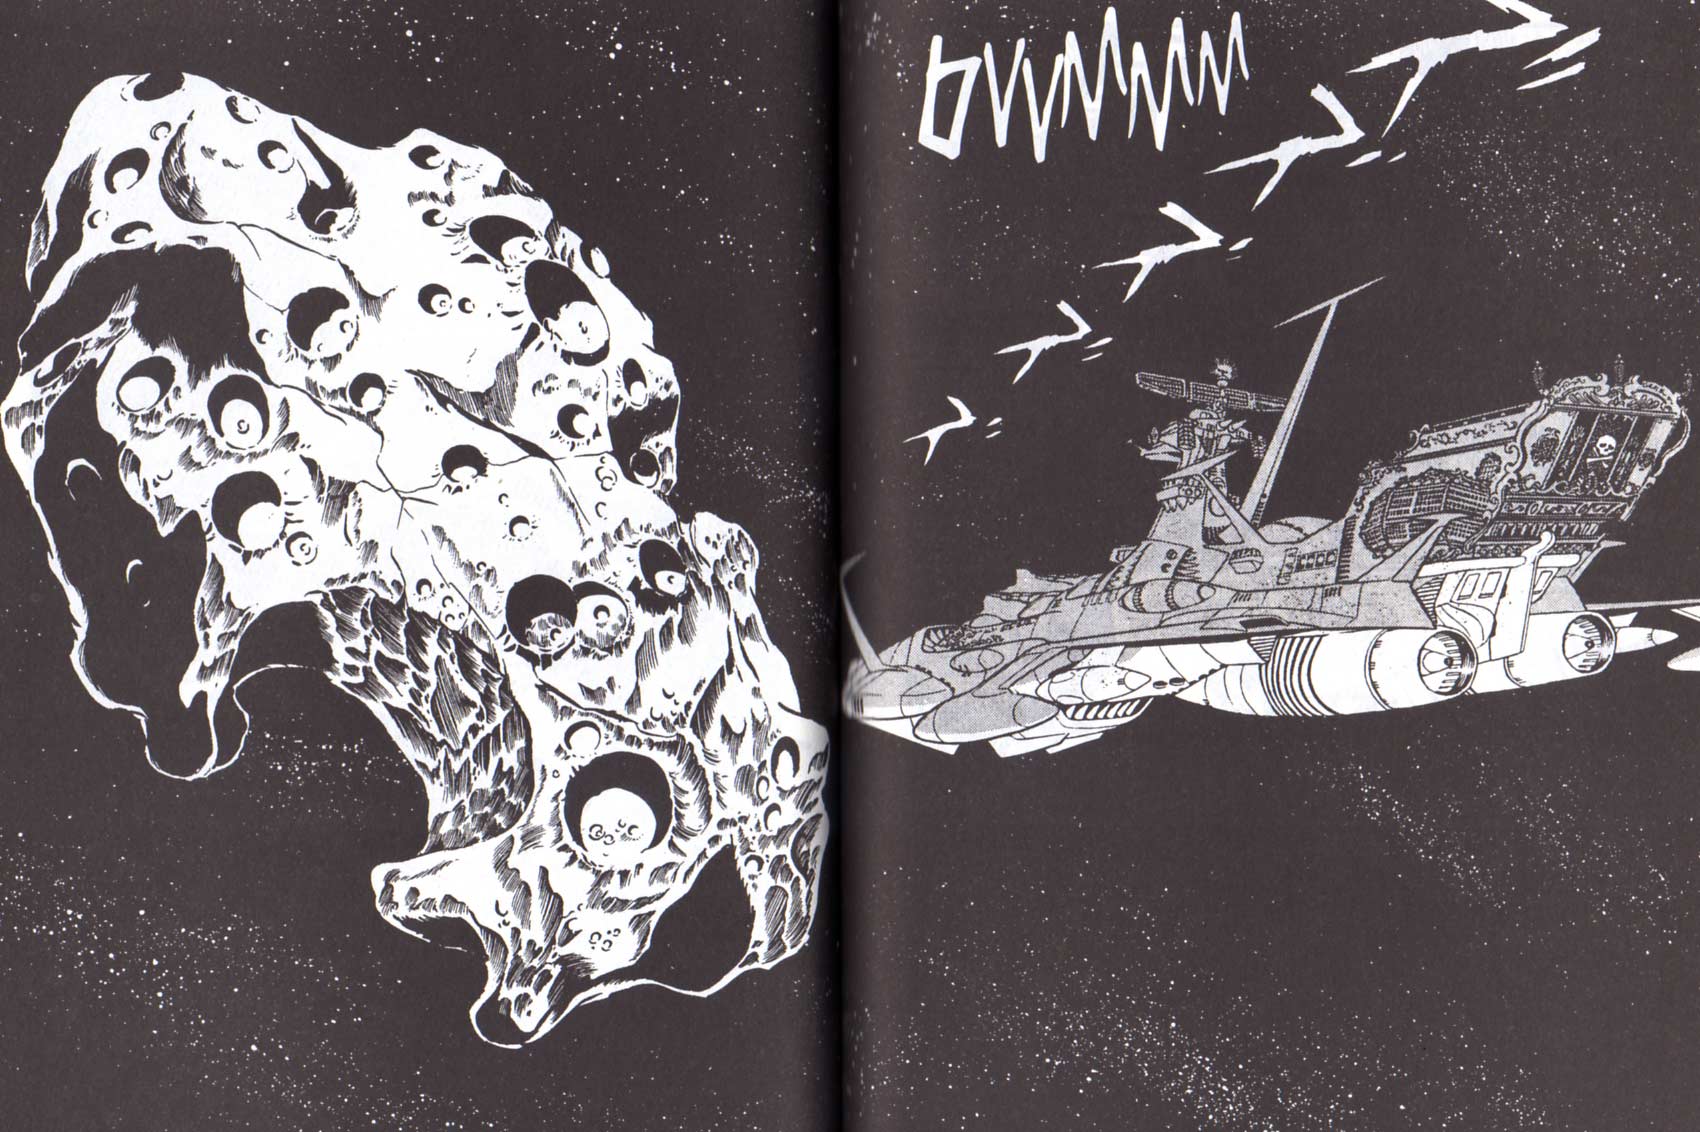 L'île aux Pirates apparaît aussi dans le Tome 1 page 196 du manga Capitaine Albator